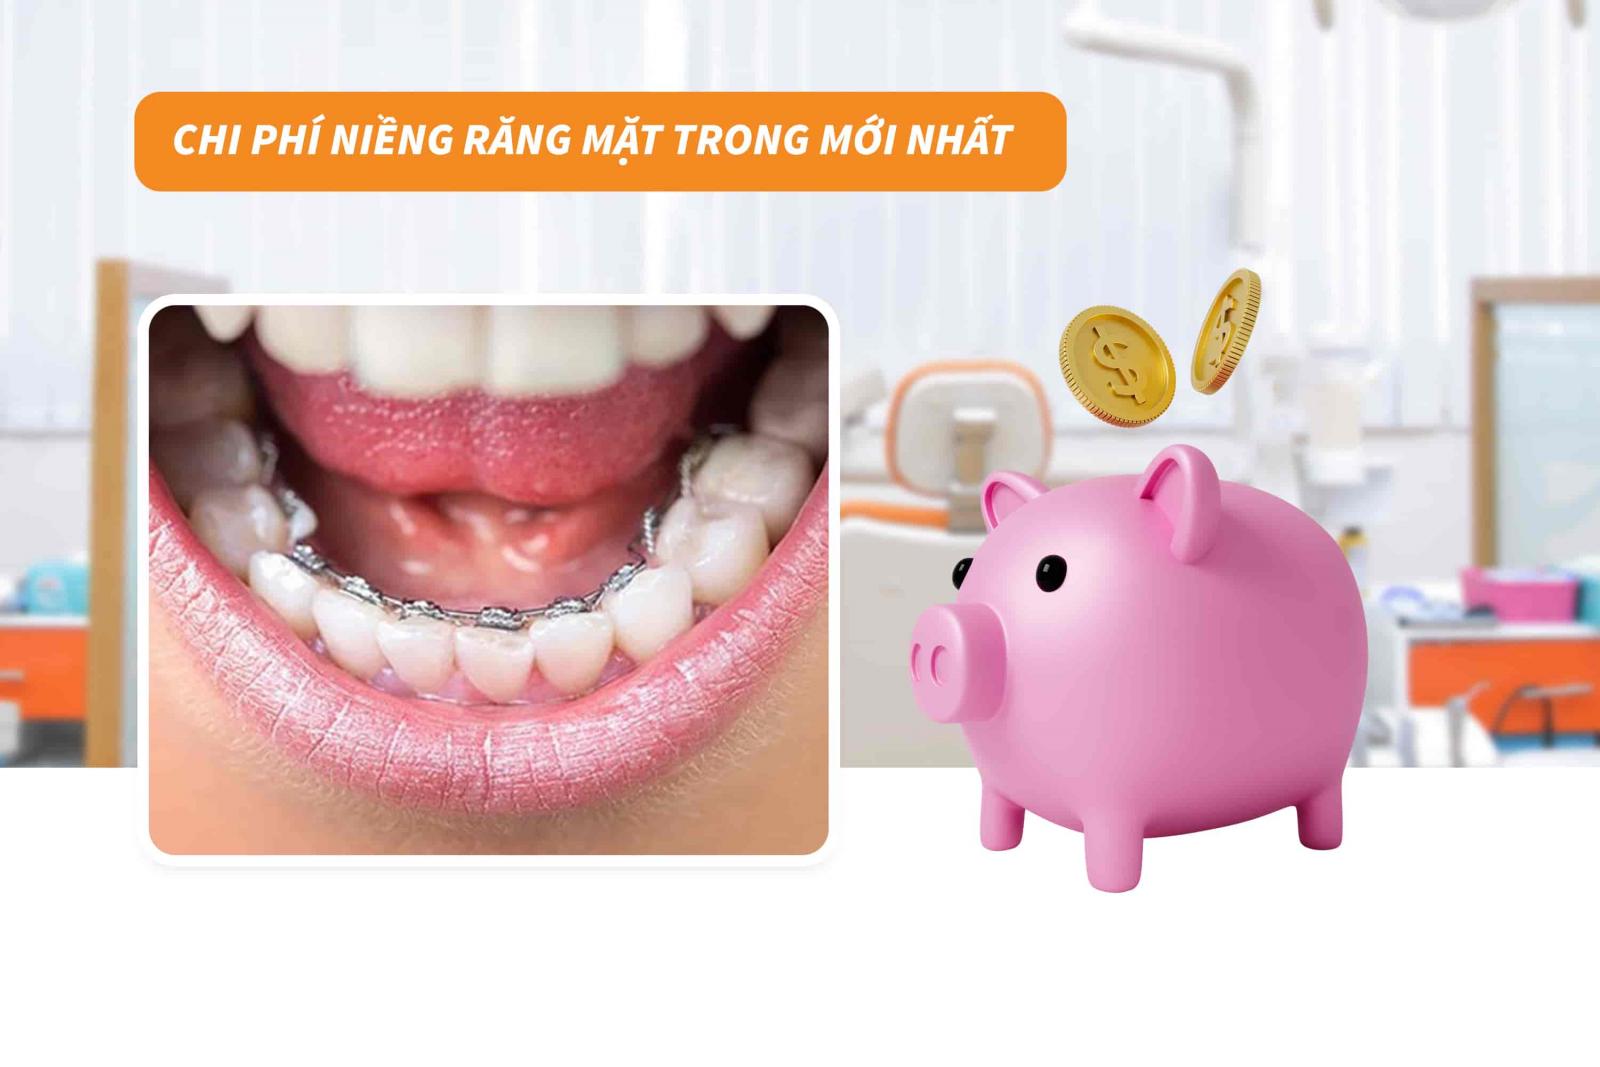 Chi phí niềng răng mặt trong mới nhất tại Up Dental